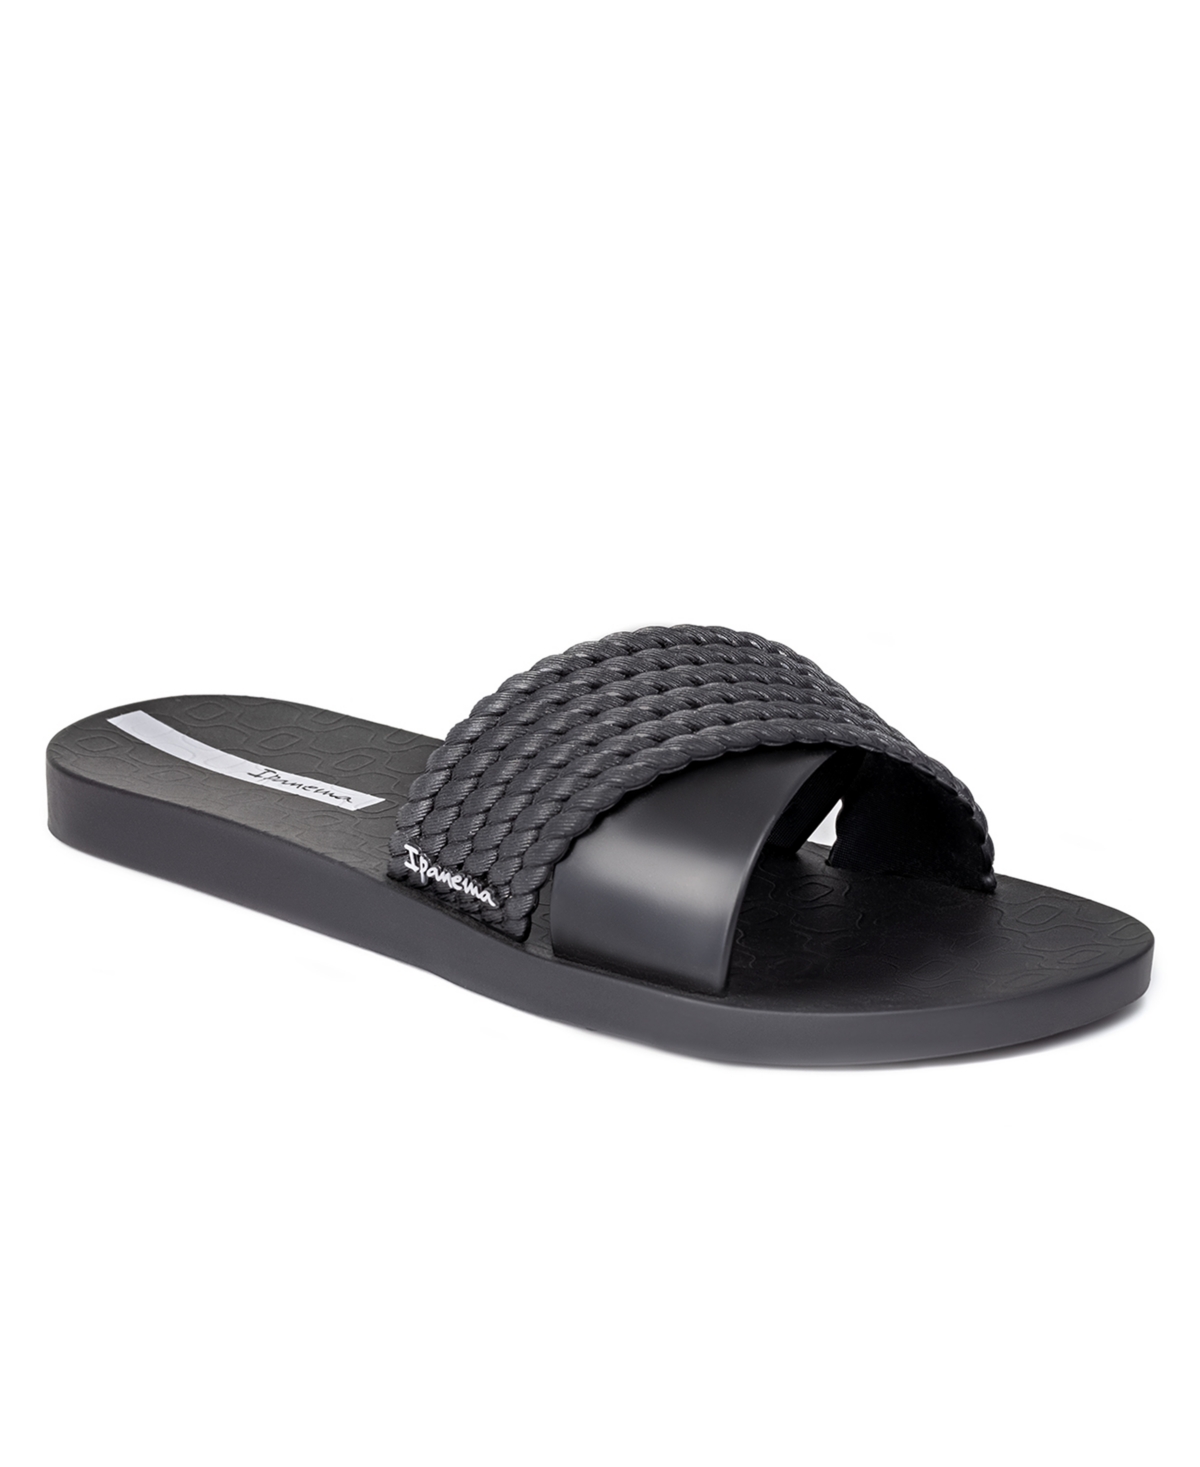 Ipanema Women's Street Ii Water-resistant Slide Sandals Women's Shoes